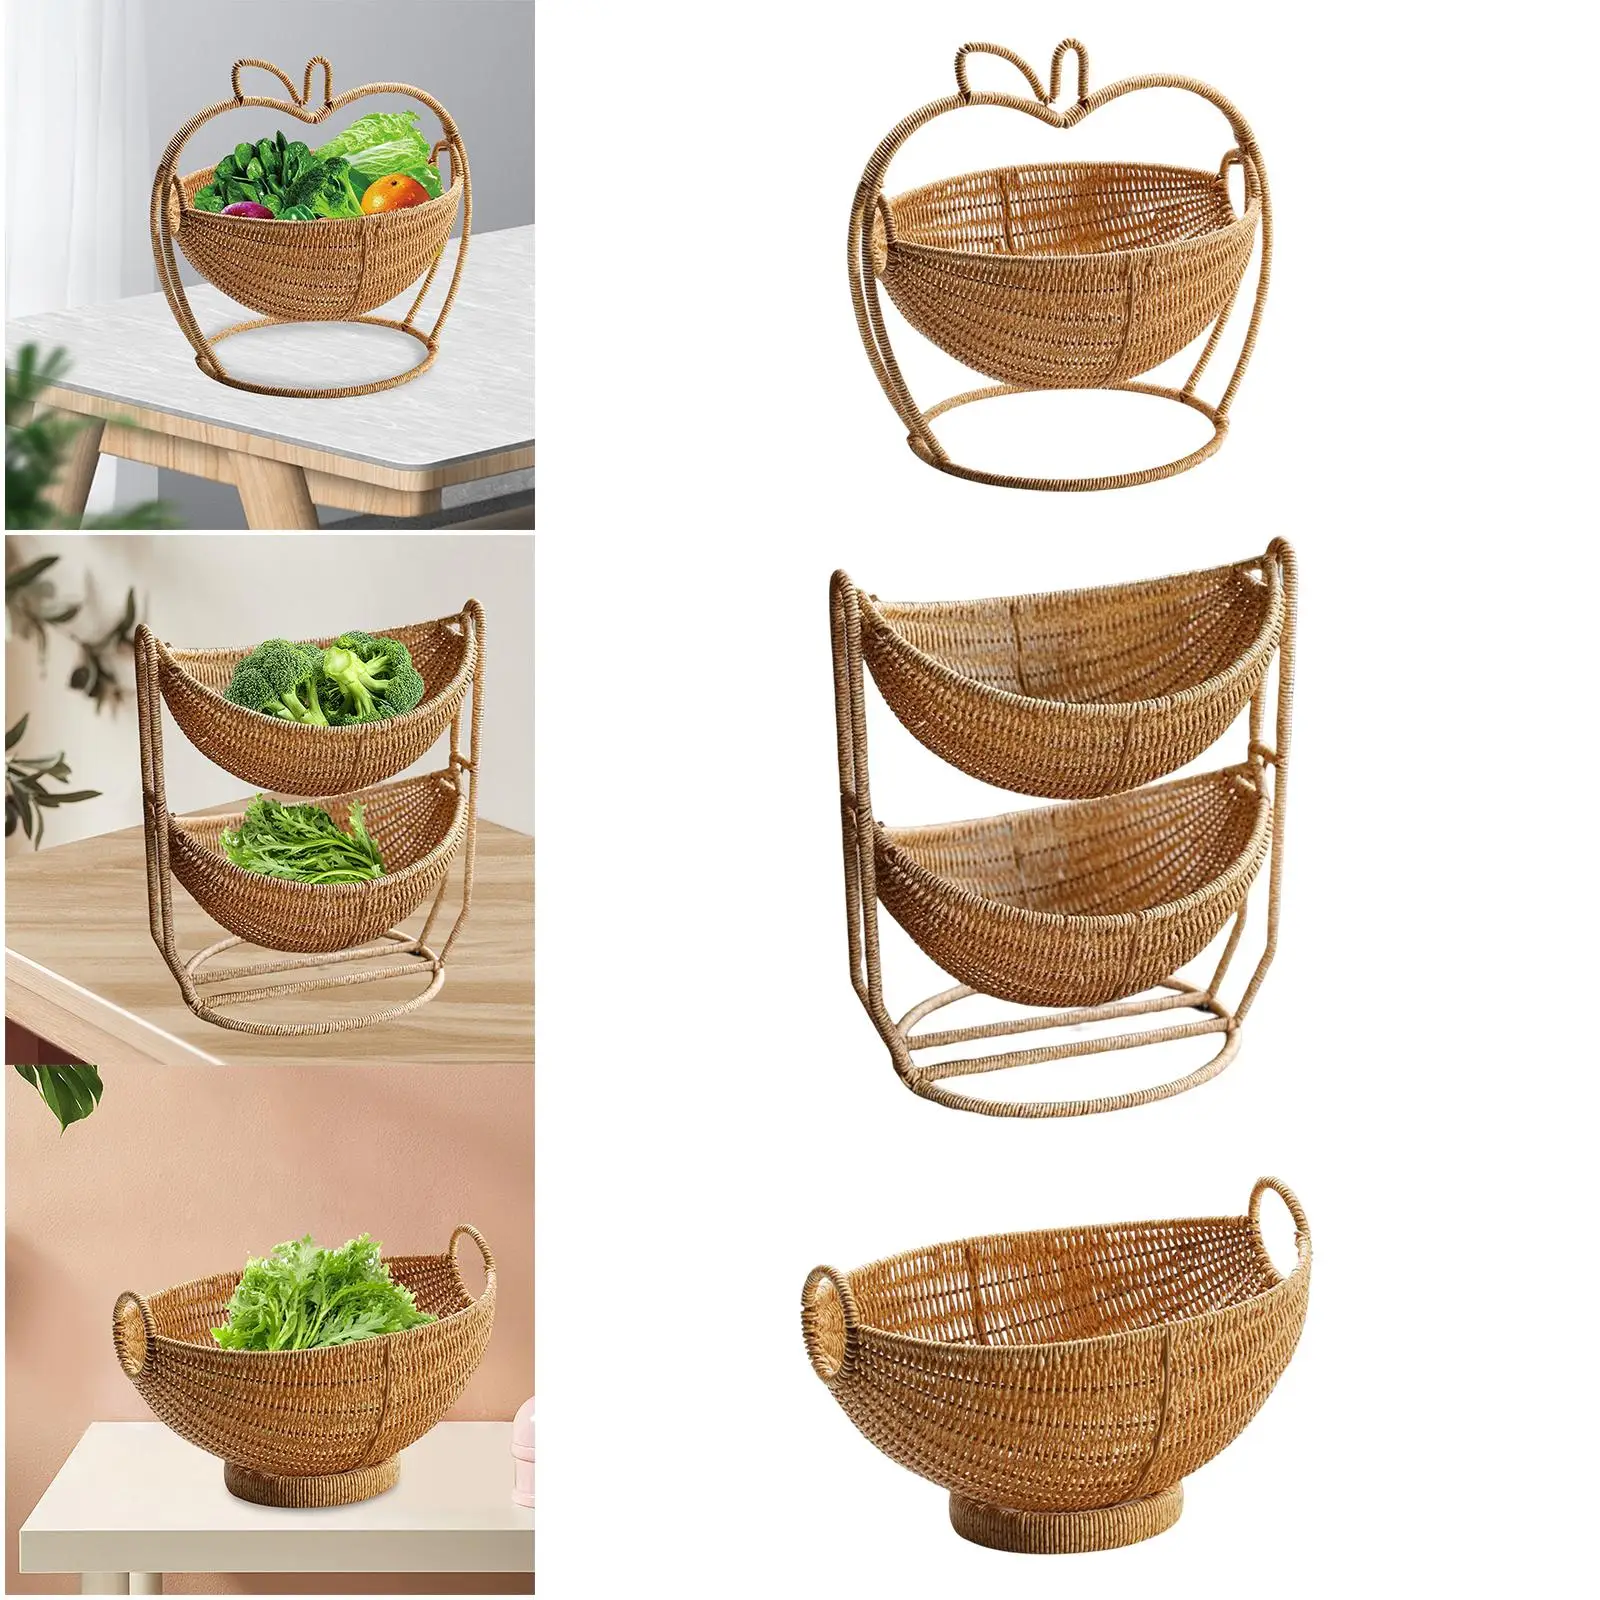 Handmade Woven Fruit Basket Rattan Food Storage Decorative Serving Shelves Multipurpose Breakfast Basket for Kitchen Cafe Home